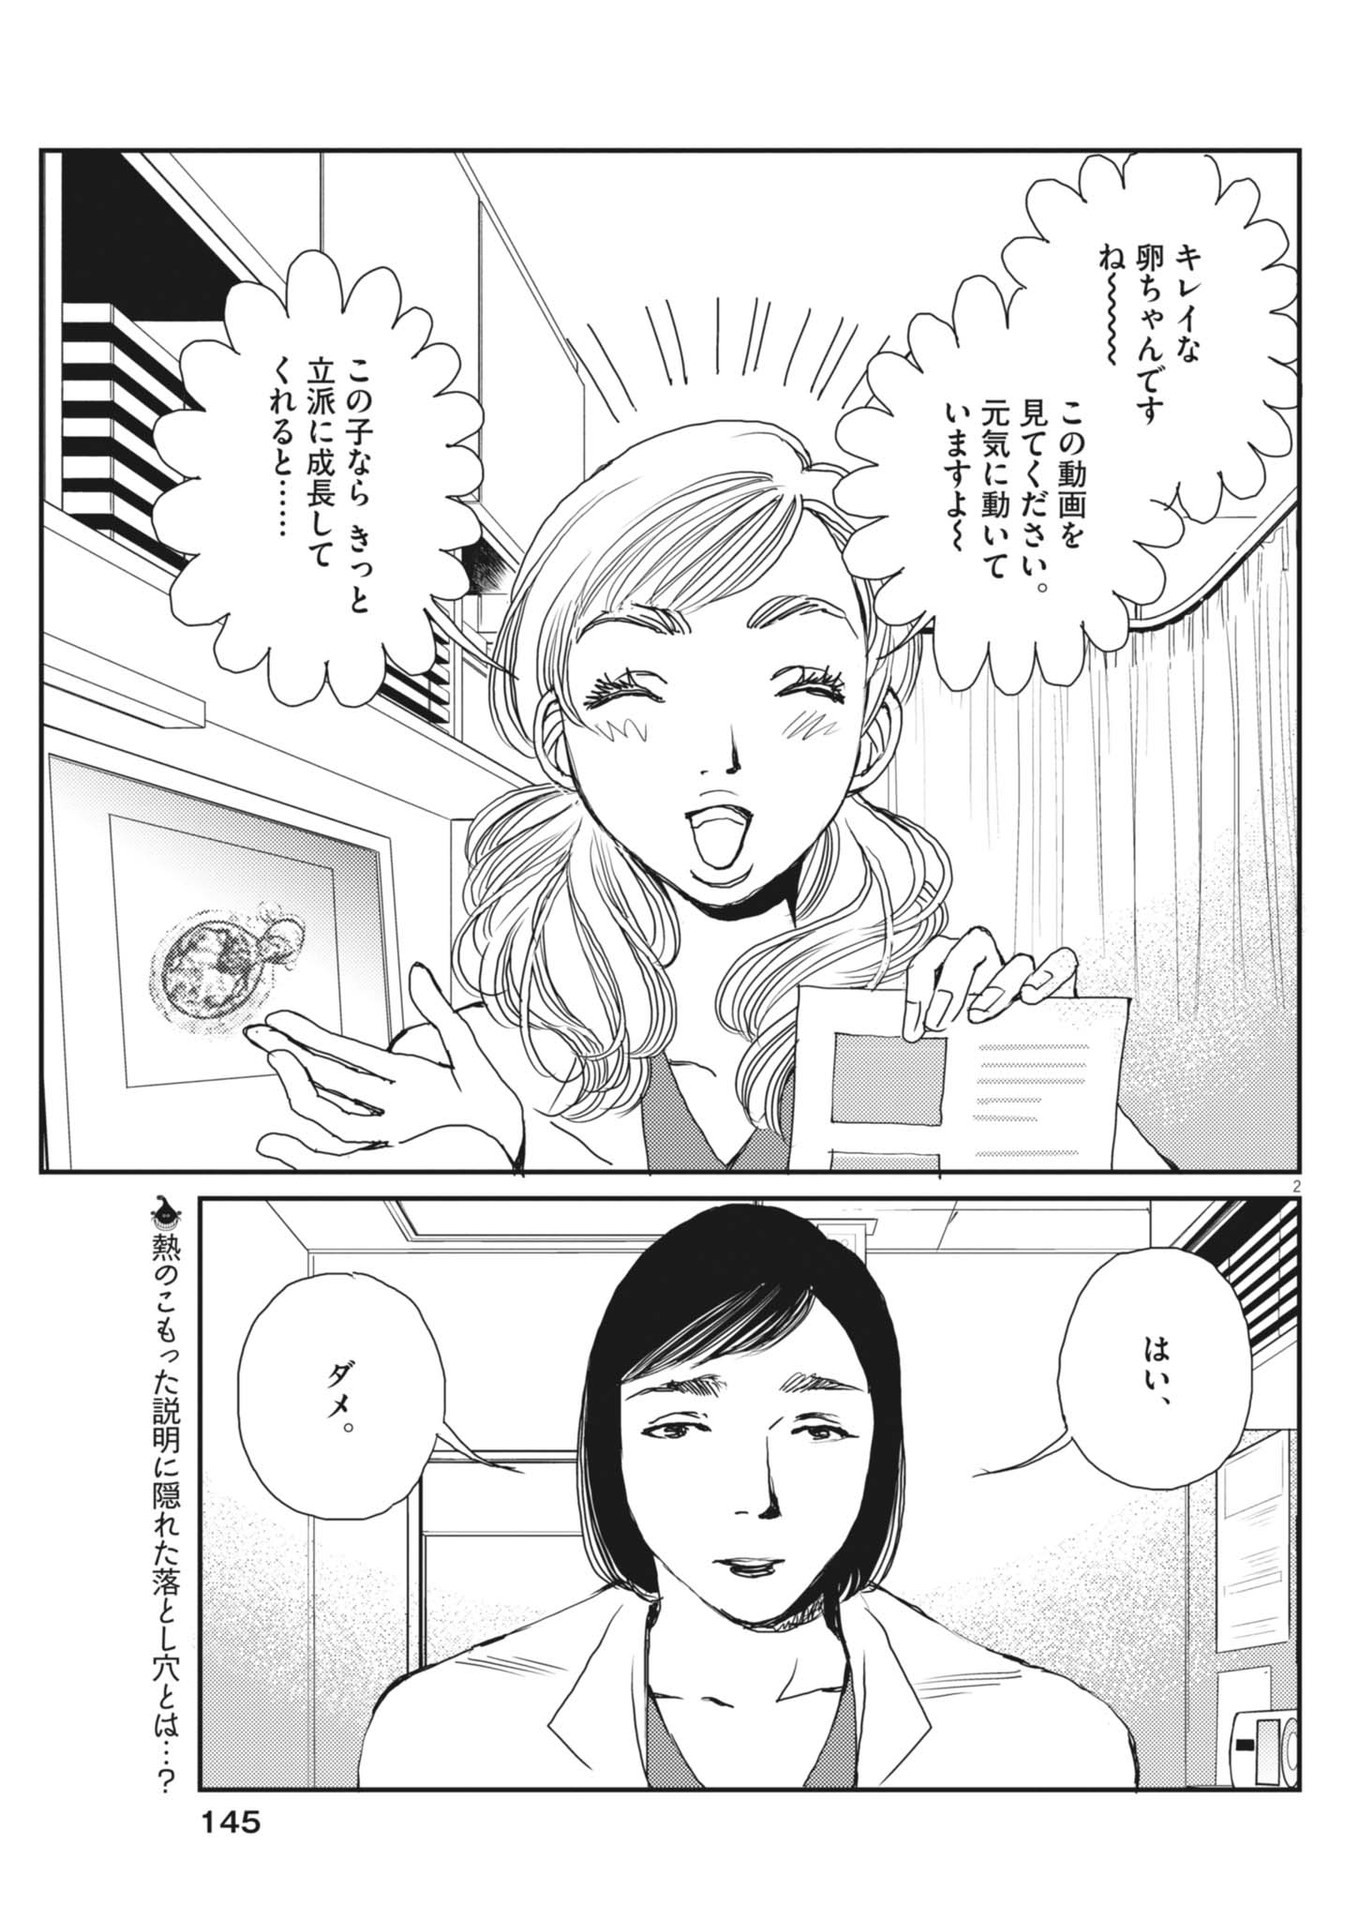 Haibaiyoushi Mizuiro - Chapter 30 - Page 2